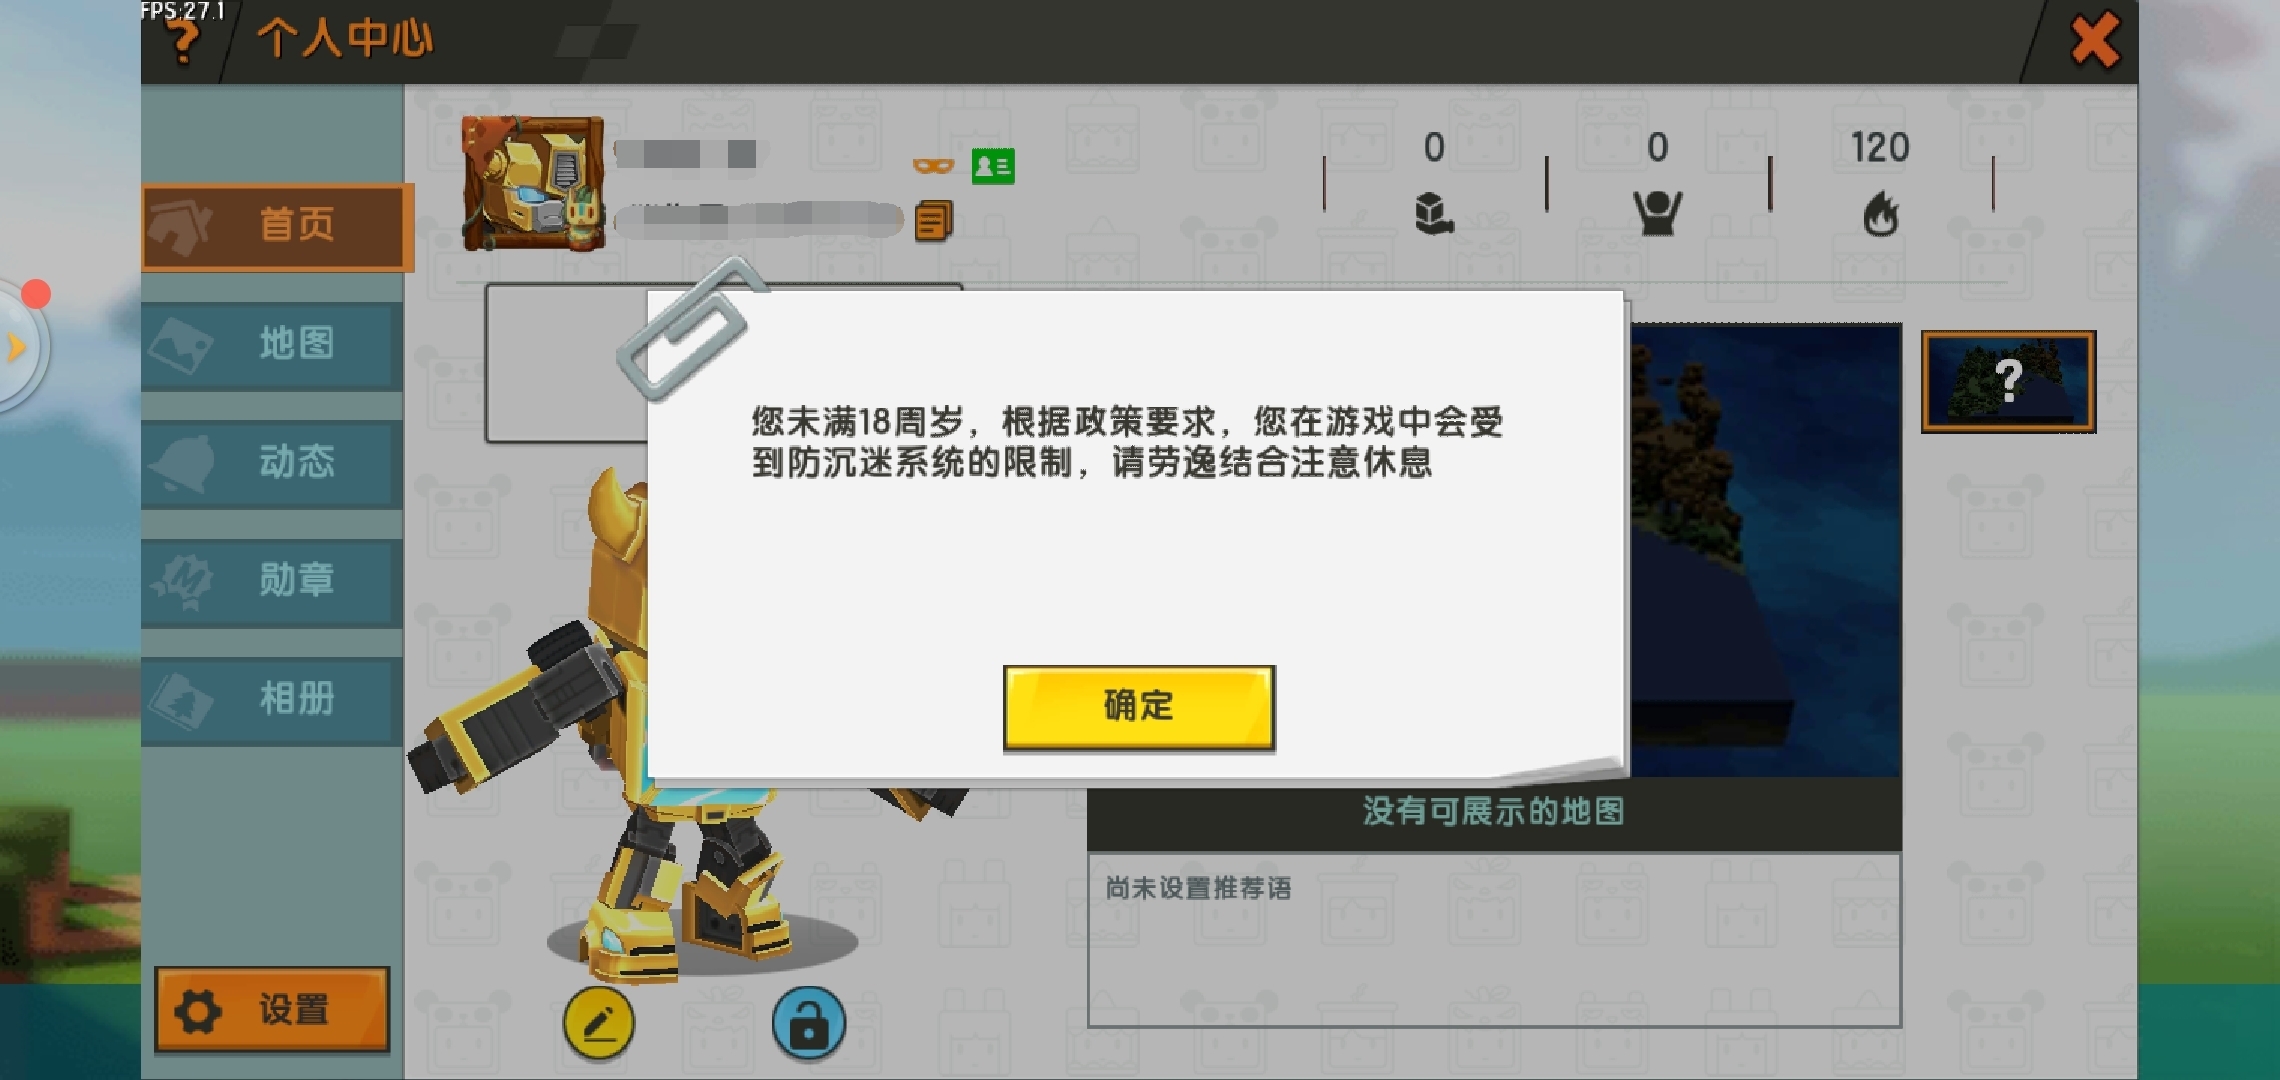 刘小姐弟弟账号登陆的迷你世界游戏界面